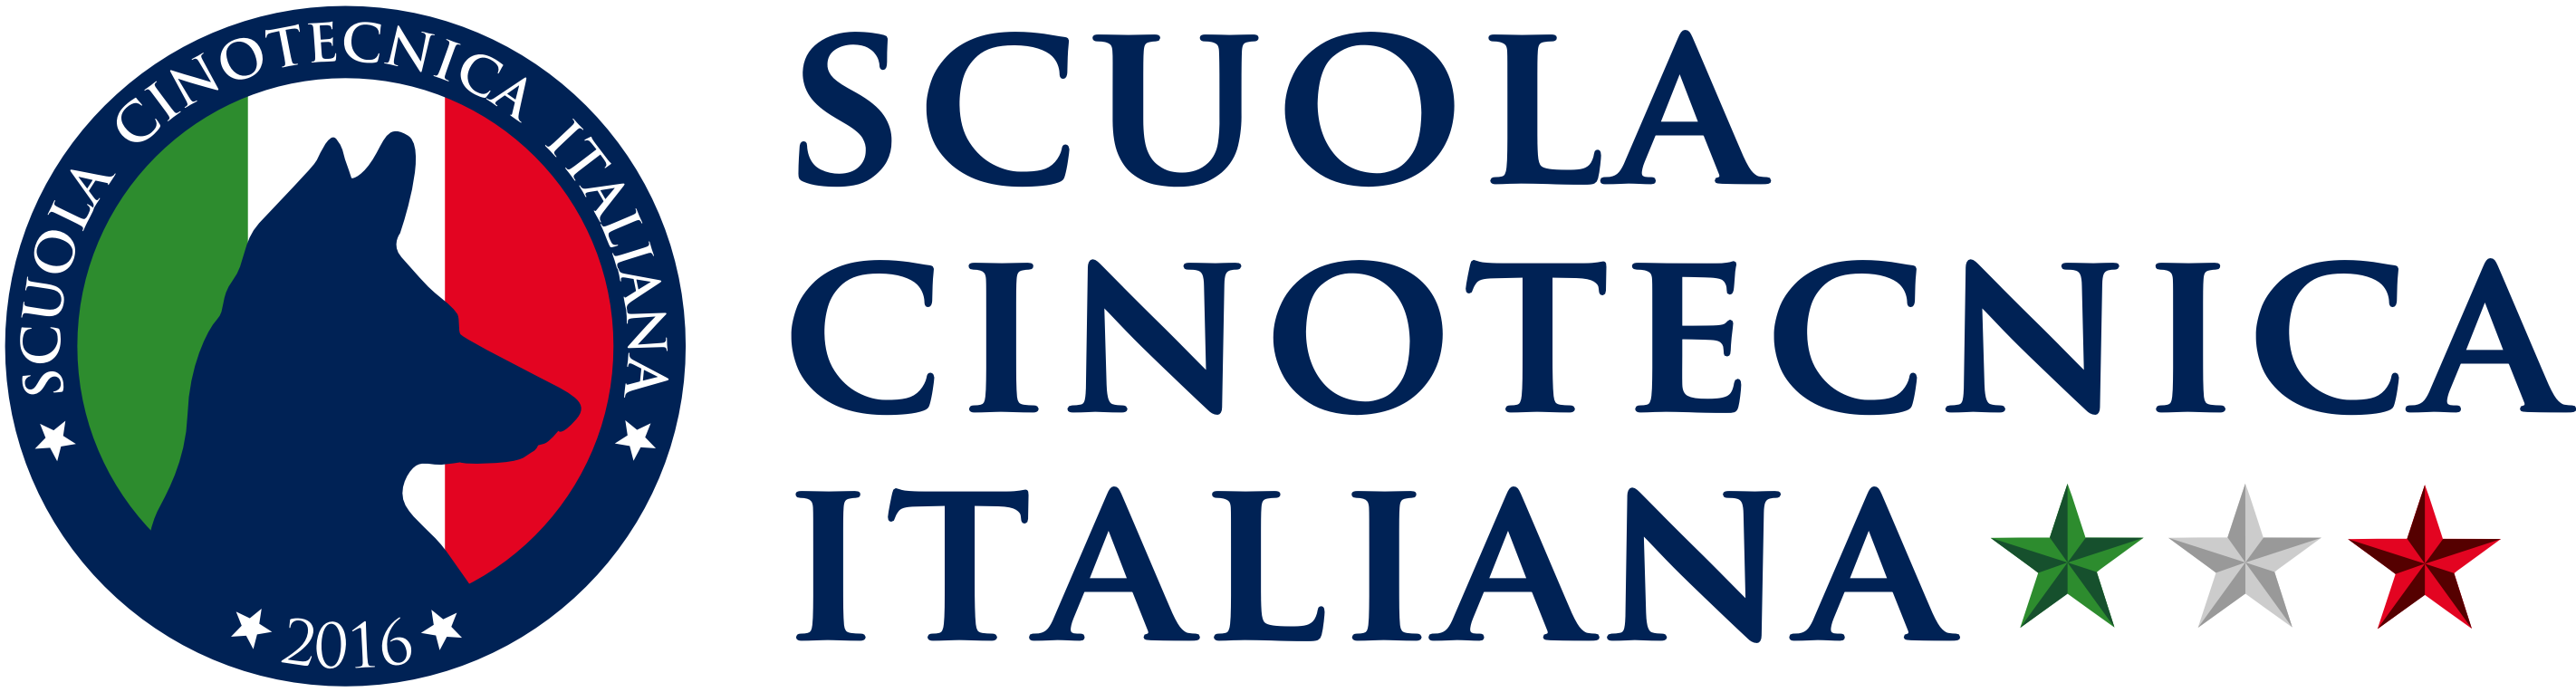 Scuola Cinotecnica Italiana